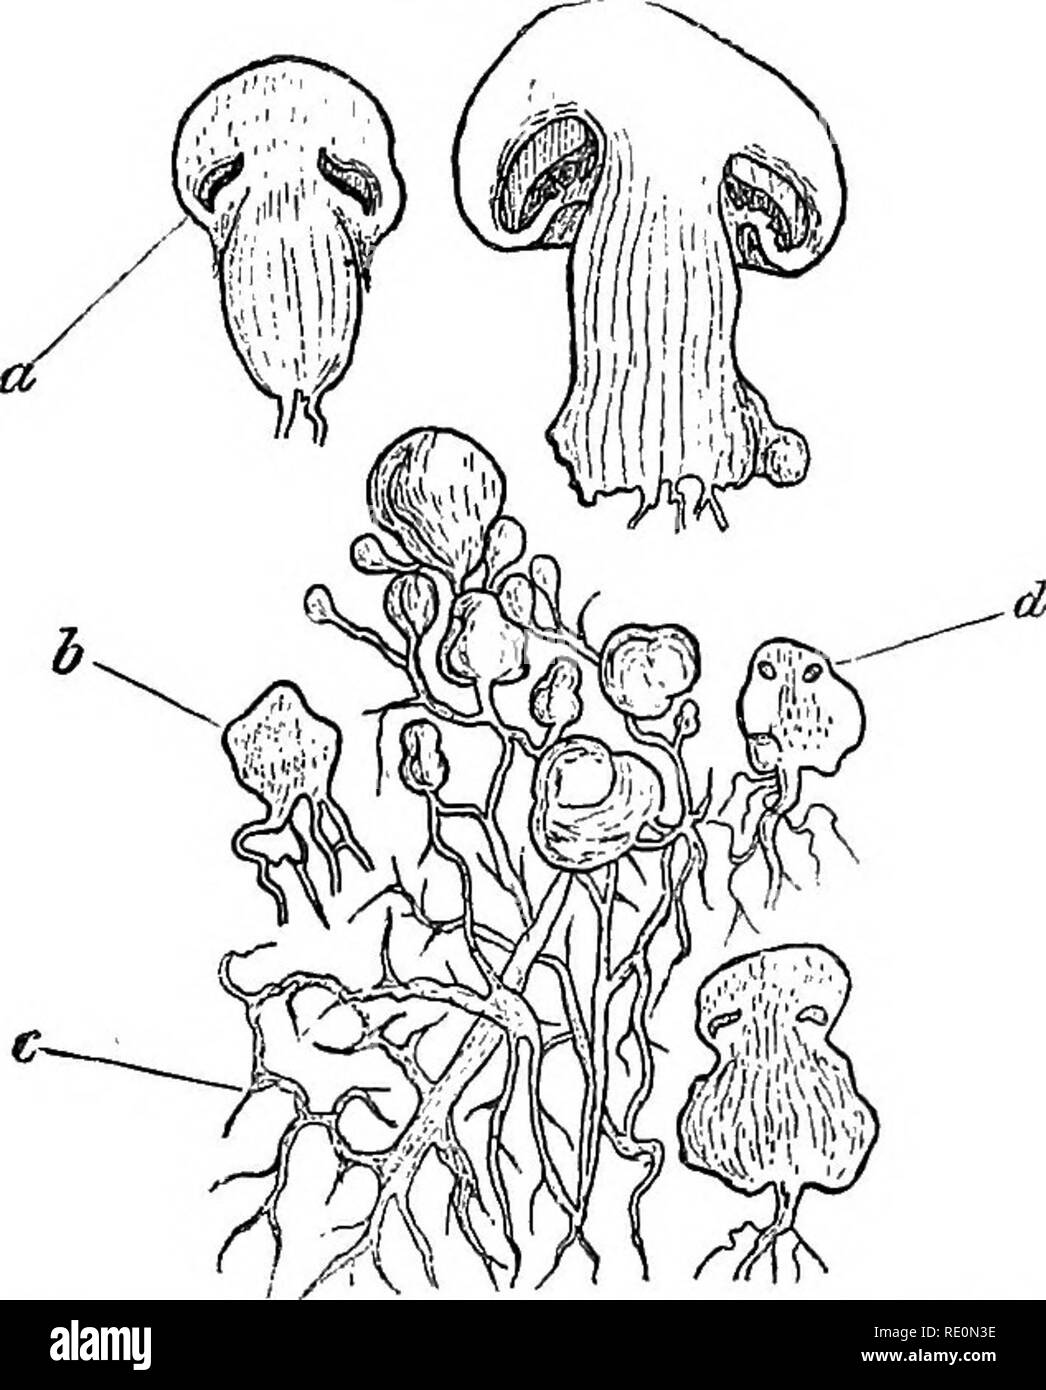 . Ein Handbuch der Botanik. Botanik. THALLOPHYTA - Pilze 91 erstreckt sich die Zentrifugalkraft. Ein ringraum ist in diesem in der Nähe von seinem unteren Teil, die in der Größe steigt mit dem Kopf verlängert. Der Kopf kann jetzt als verschieden von dem unteren Teil der apikalenden Masse anerkannt zu werden, und als jiileus bekannt, der untere Teil oder Stiel aufgerufen, die Stengel. In den Hohlraum eine Reihe von Platten oder Lamellen entwickelt, die vom Zentrum zum Kreisumfang ausstrahlen. Diese bilden die giUs des Pilzes, und Ihnen die Sporen oder gonidia entwickelt. Als das Wachstum des stipes Erlöse, die Teil des Stapels Stockfoto